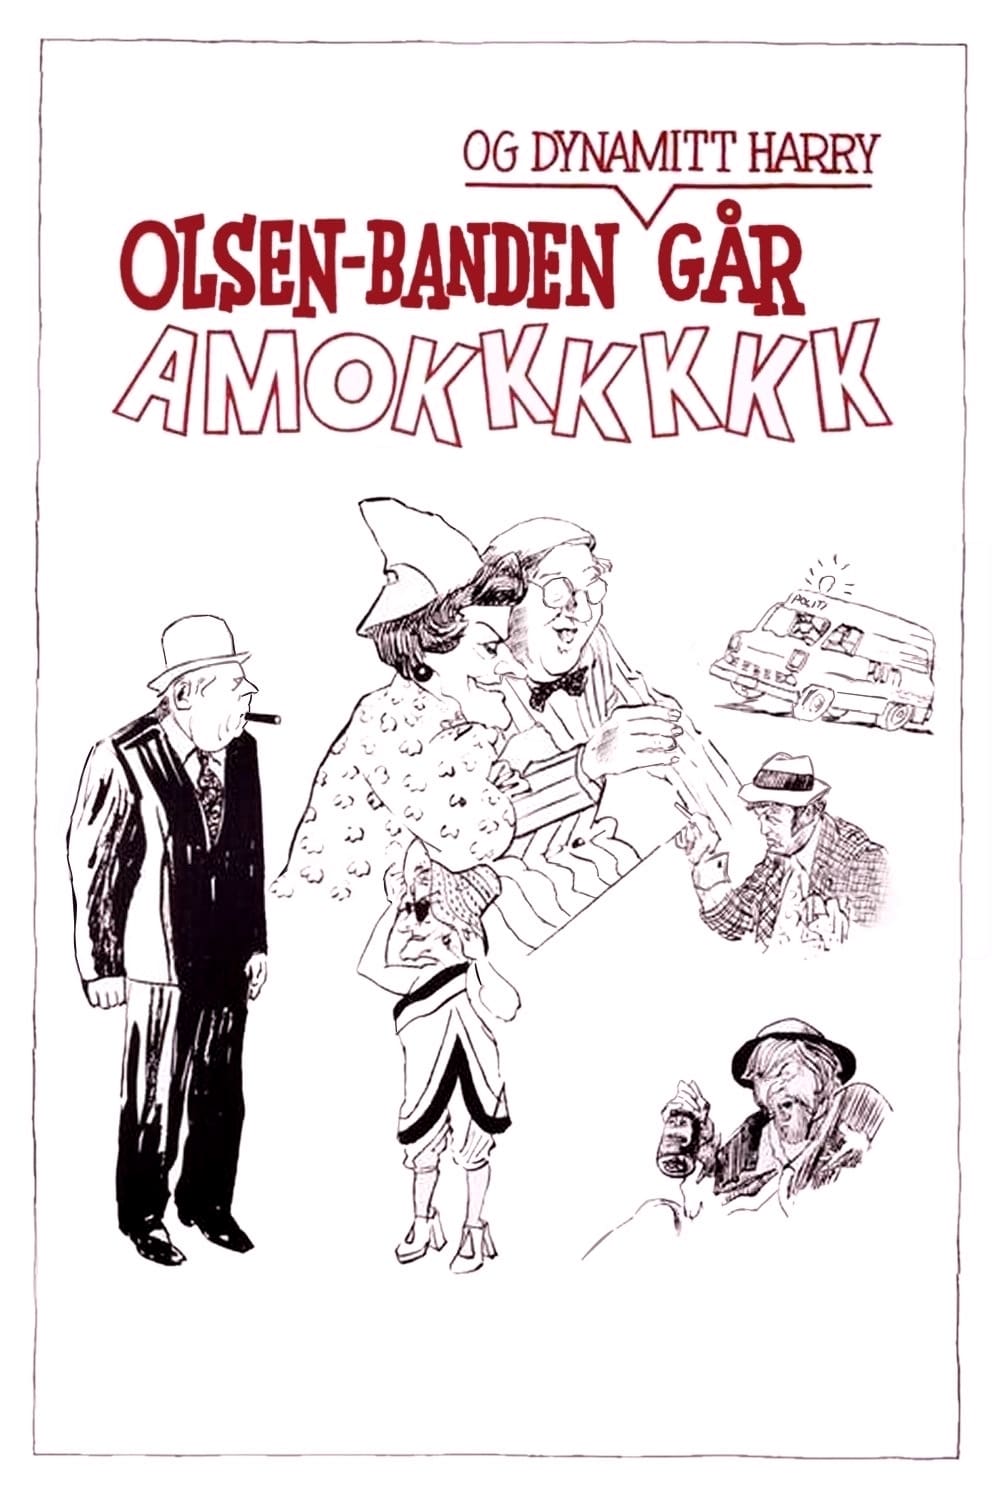 Olsenbanden og Dynamitt-Harry går amok (1973)